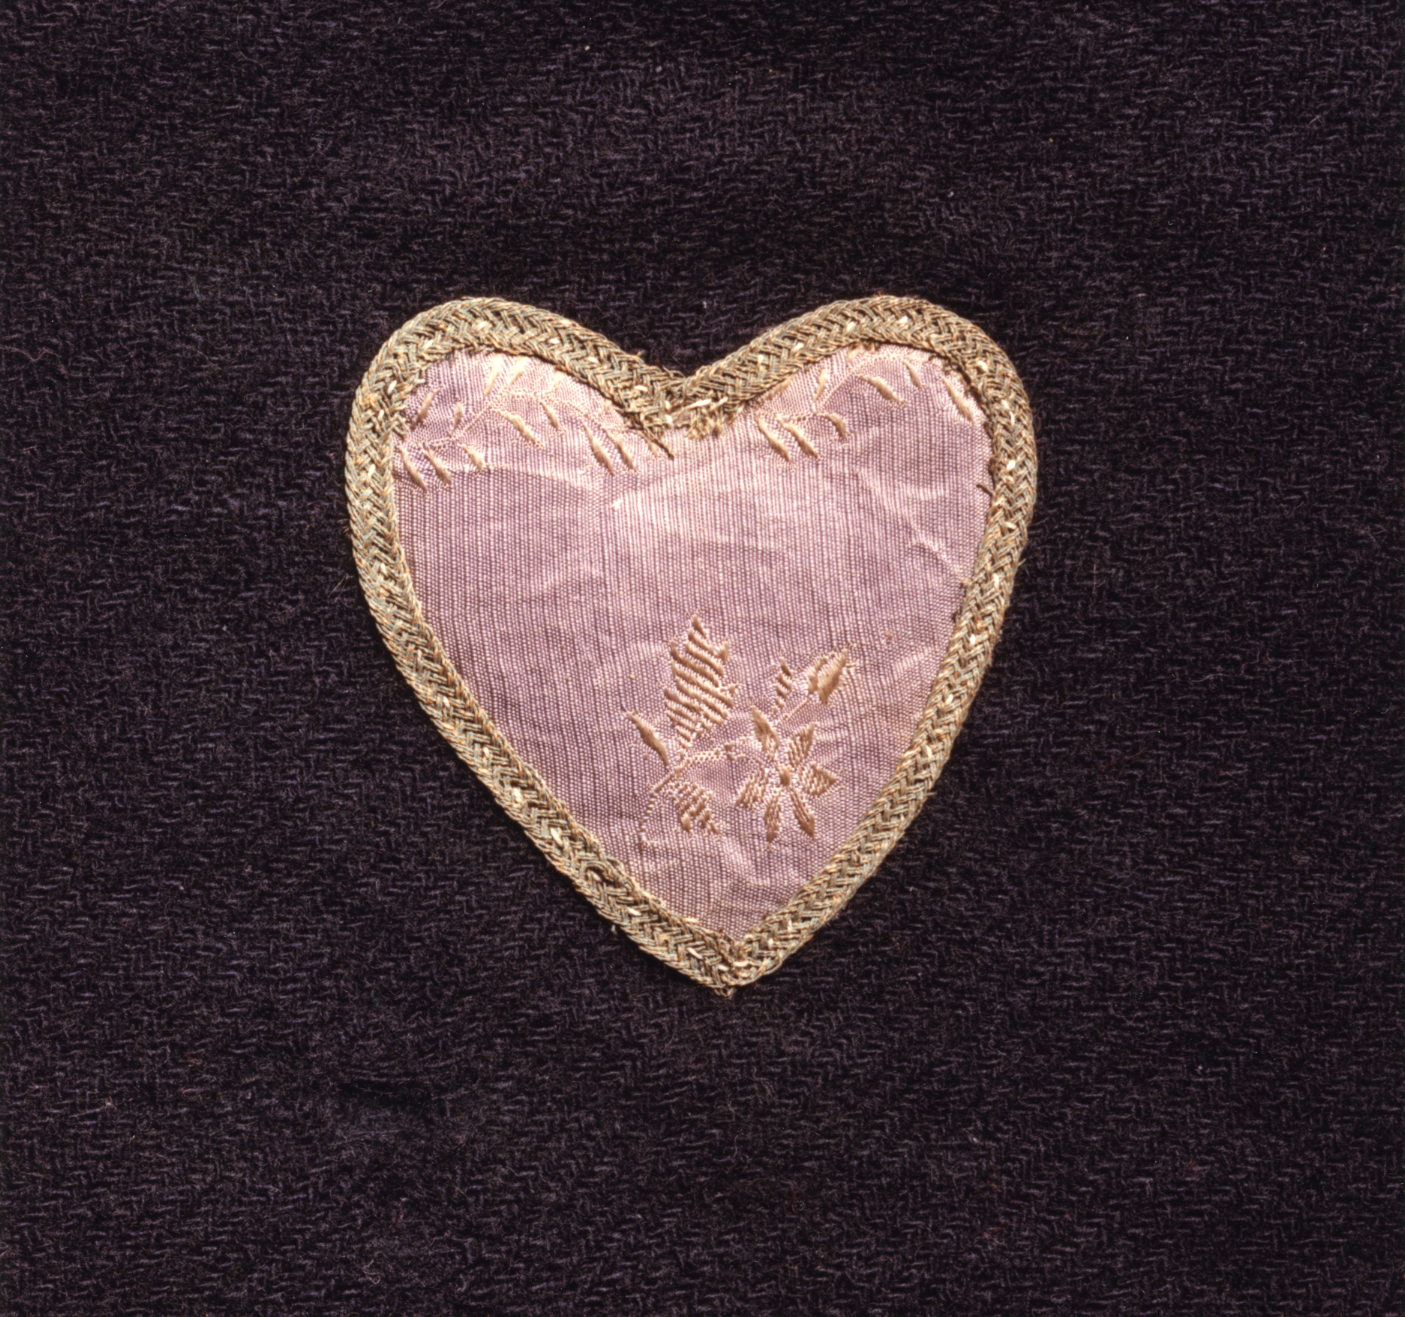 Badge of Military Merit, ca. 1782-1783